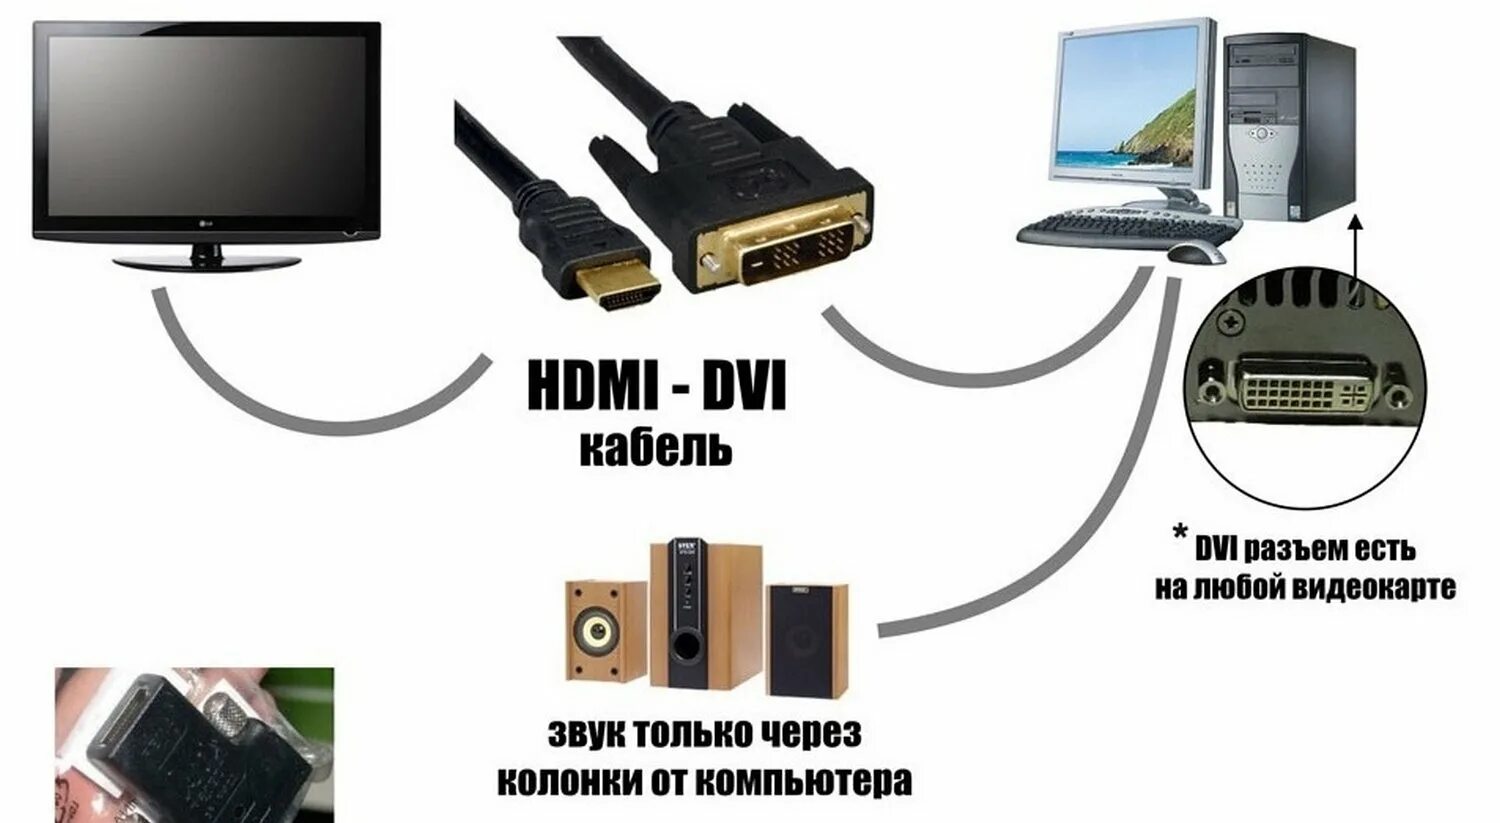 Как можно подключить кабель. HDMI кабель для телевизора и компьютера как подключить. Как подключить ПК К телевизору через HDMI кабель. Как подсоединить провод HDMI от компьютера к телевизору. Как подключить телевизионный кабель к монитору компьютера.